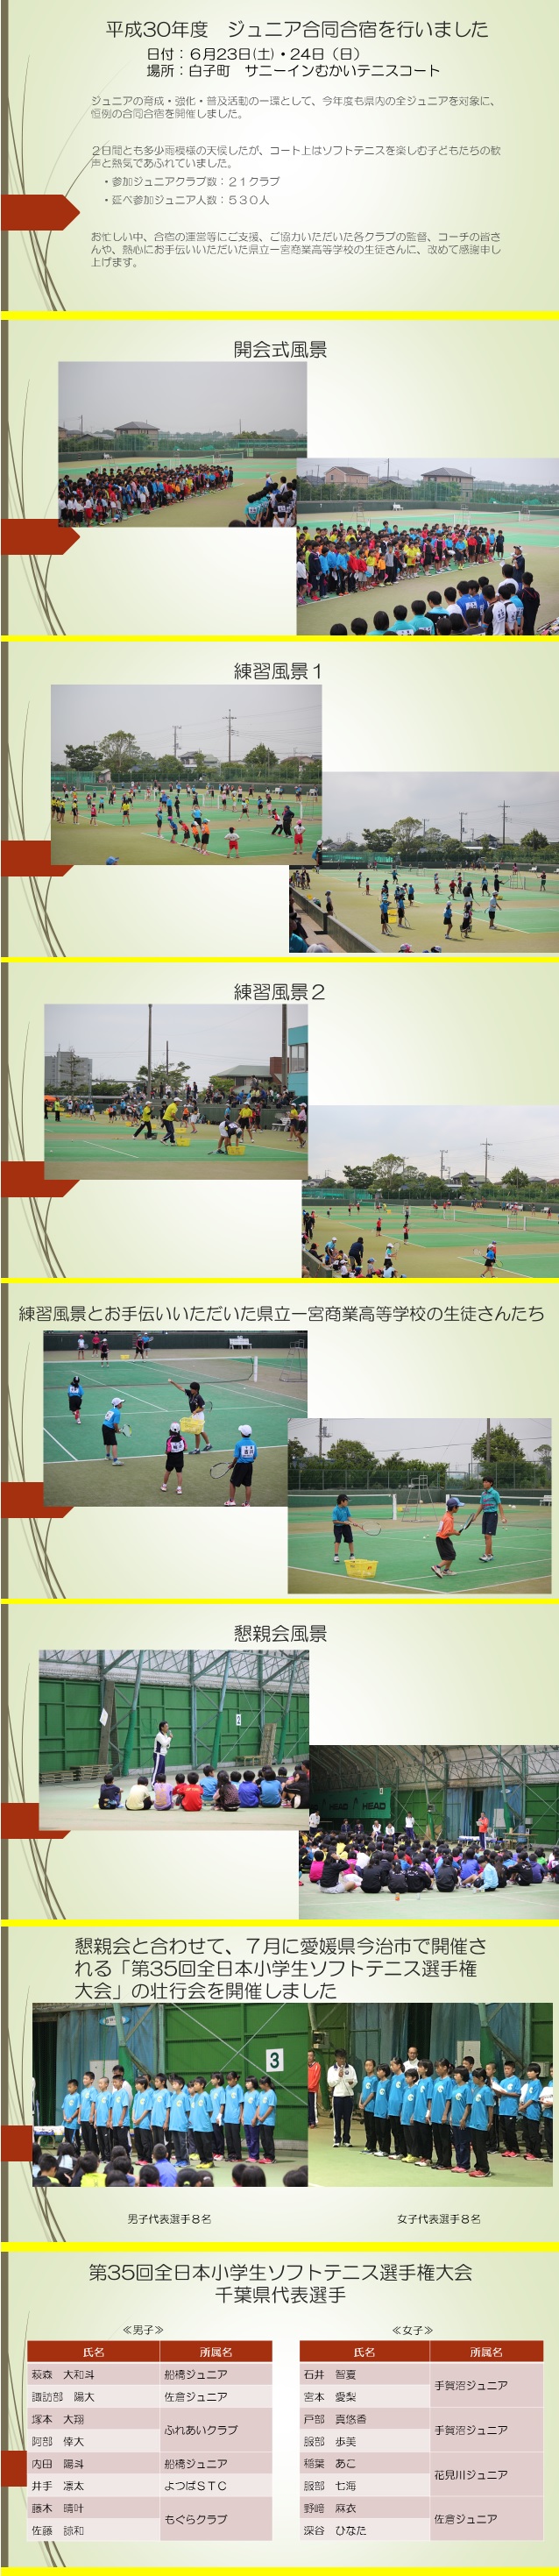 小学生 千葉県ソフトテニス連盟